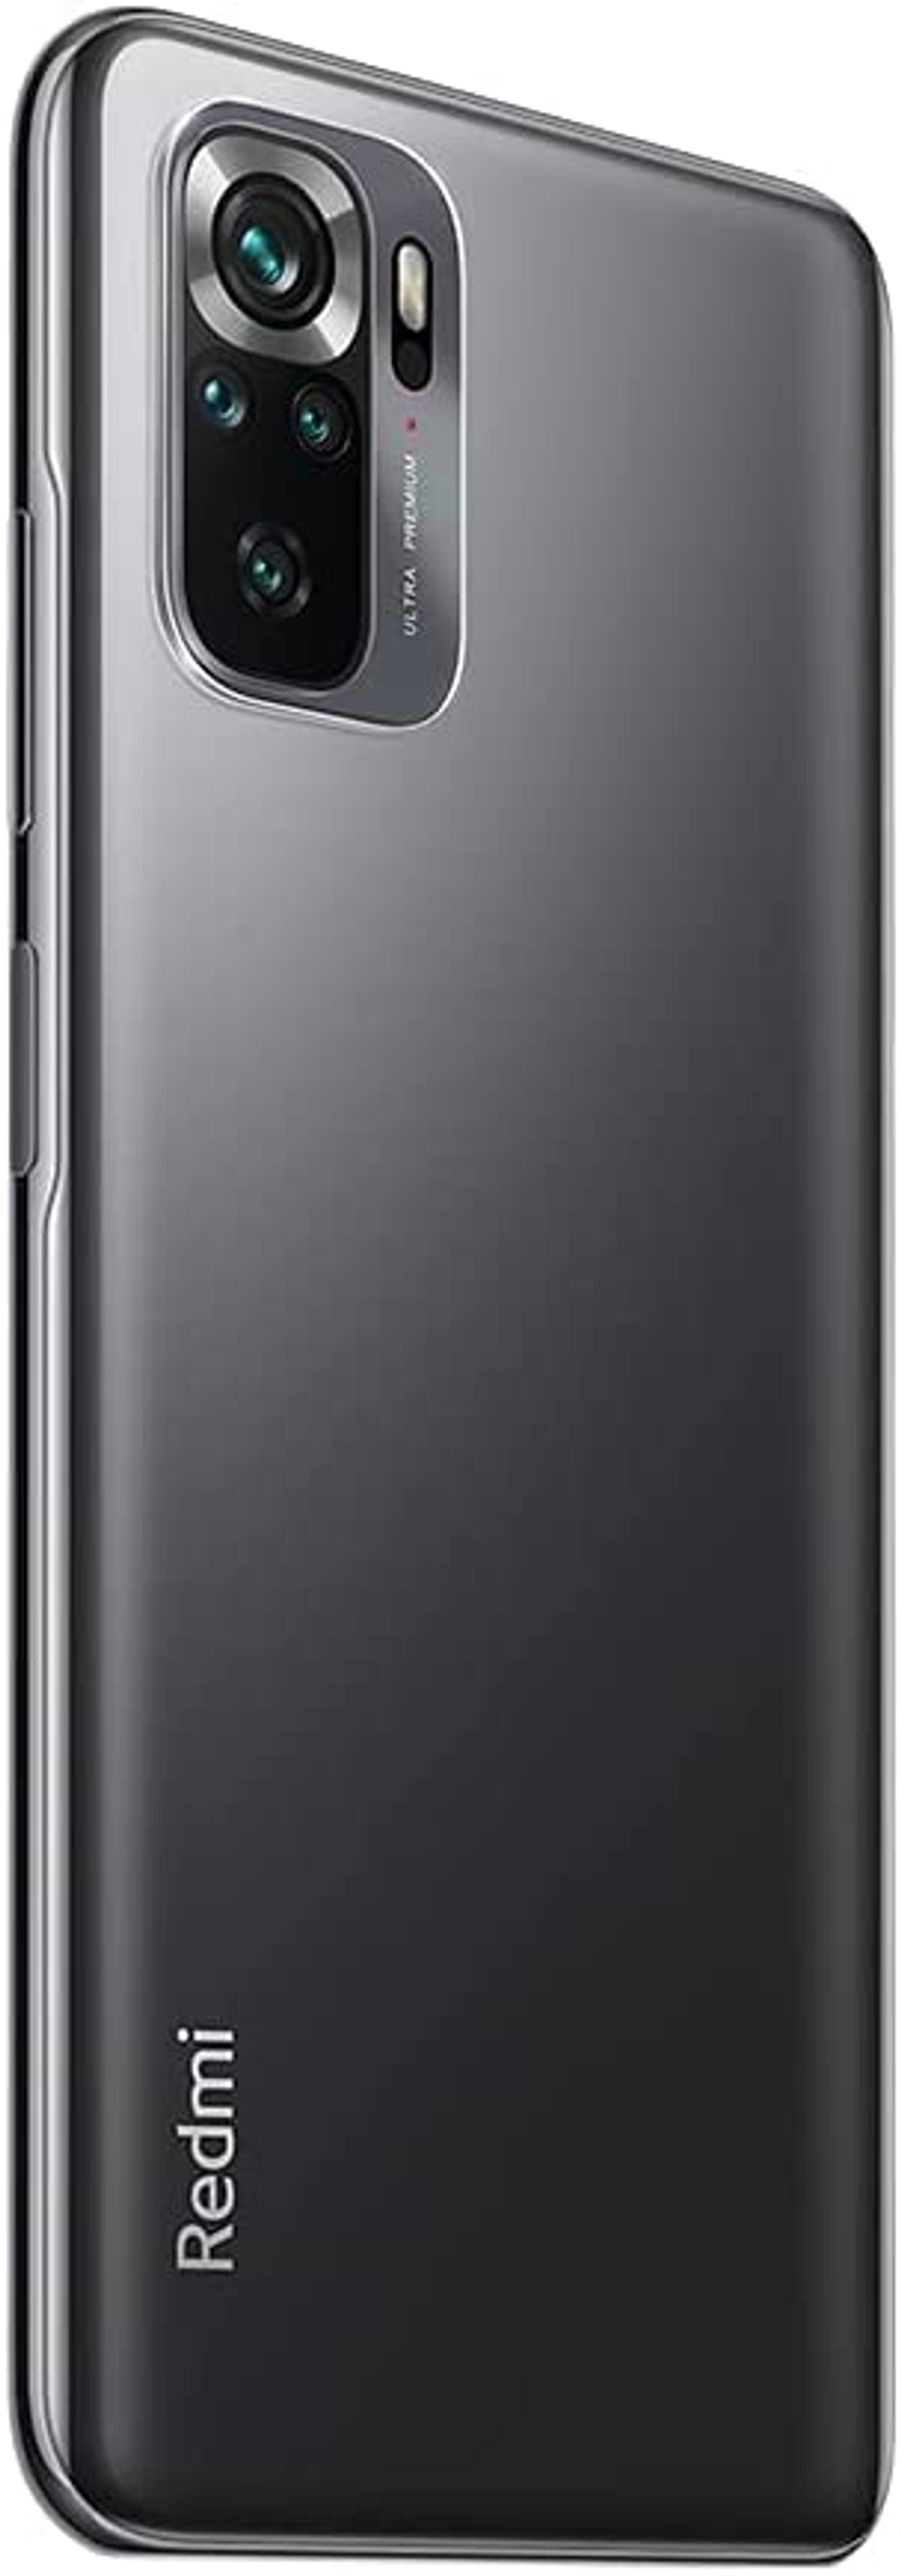 XIAOMI 10S Redmi Dual 8 GB SIM Grau Note